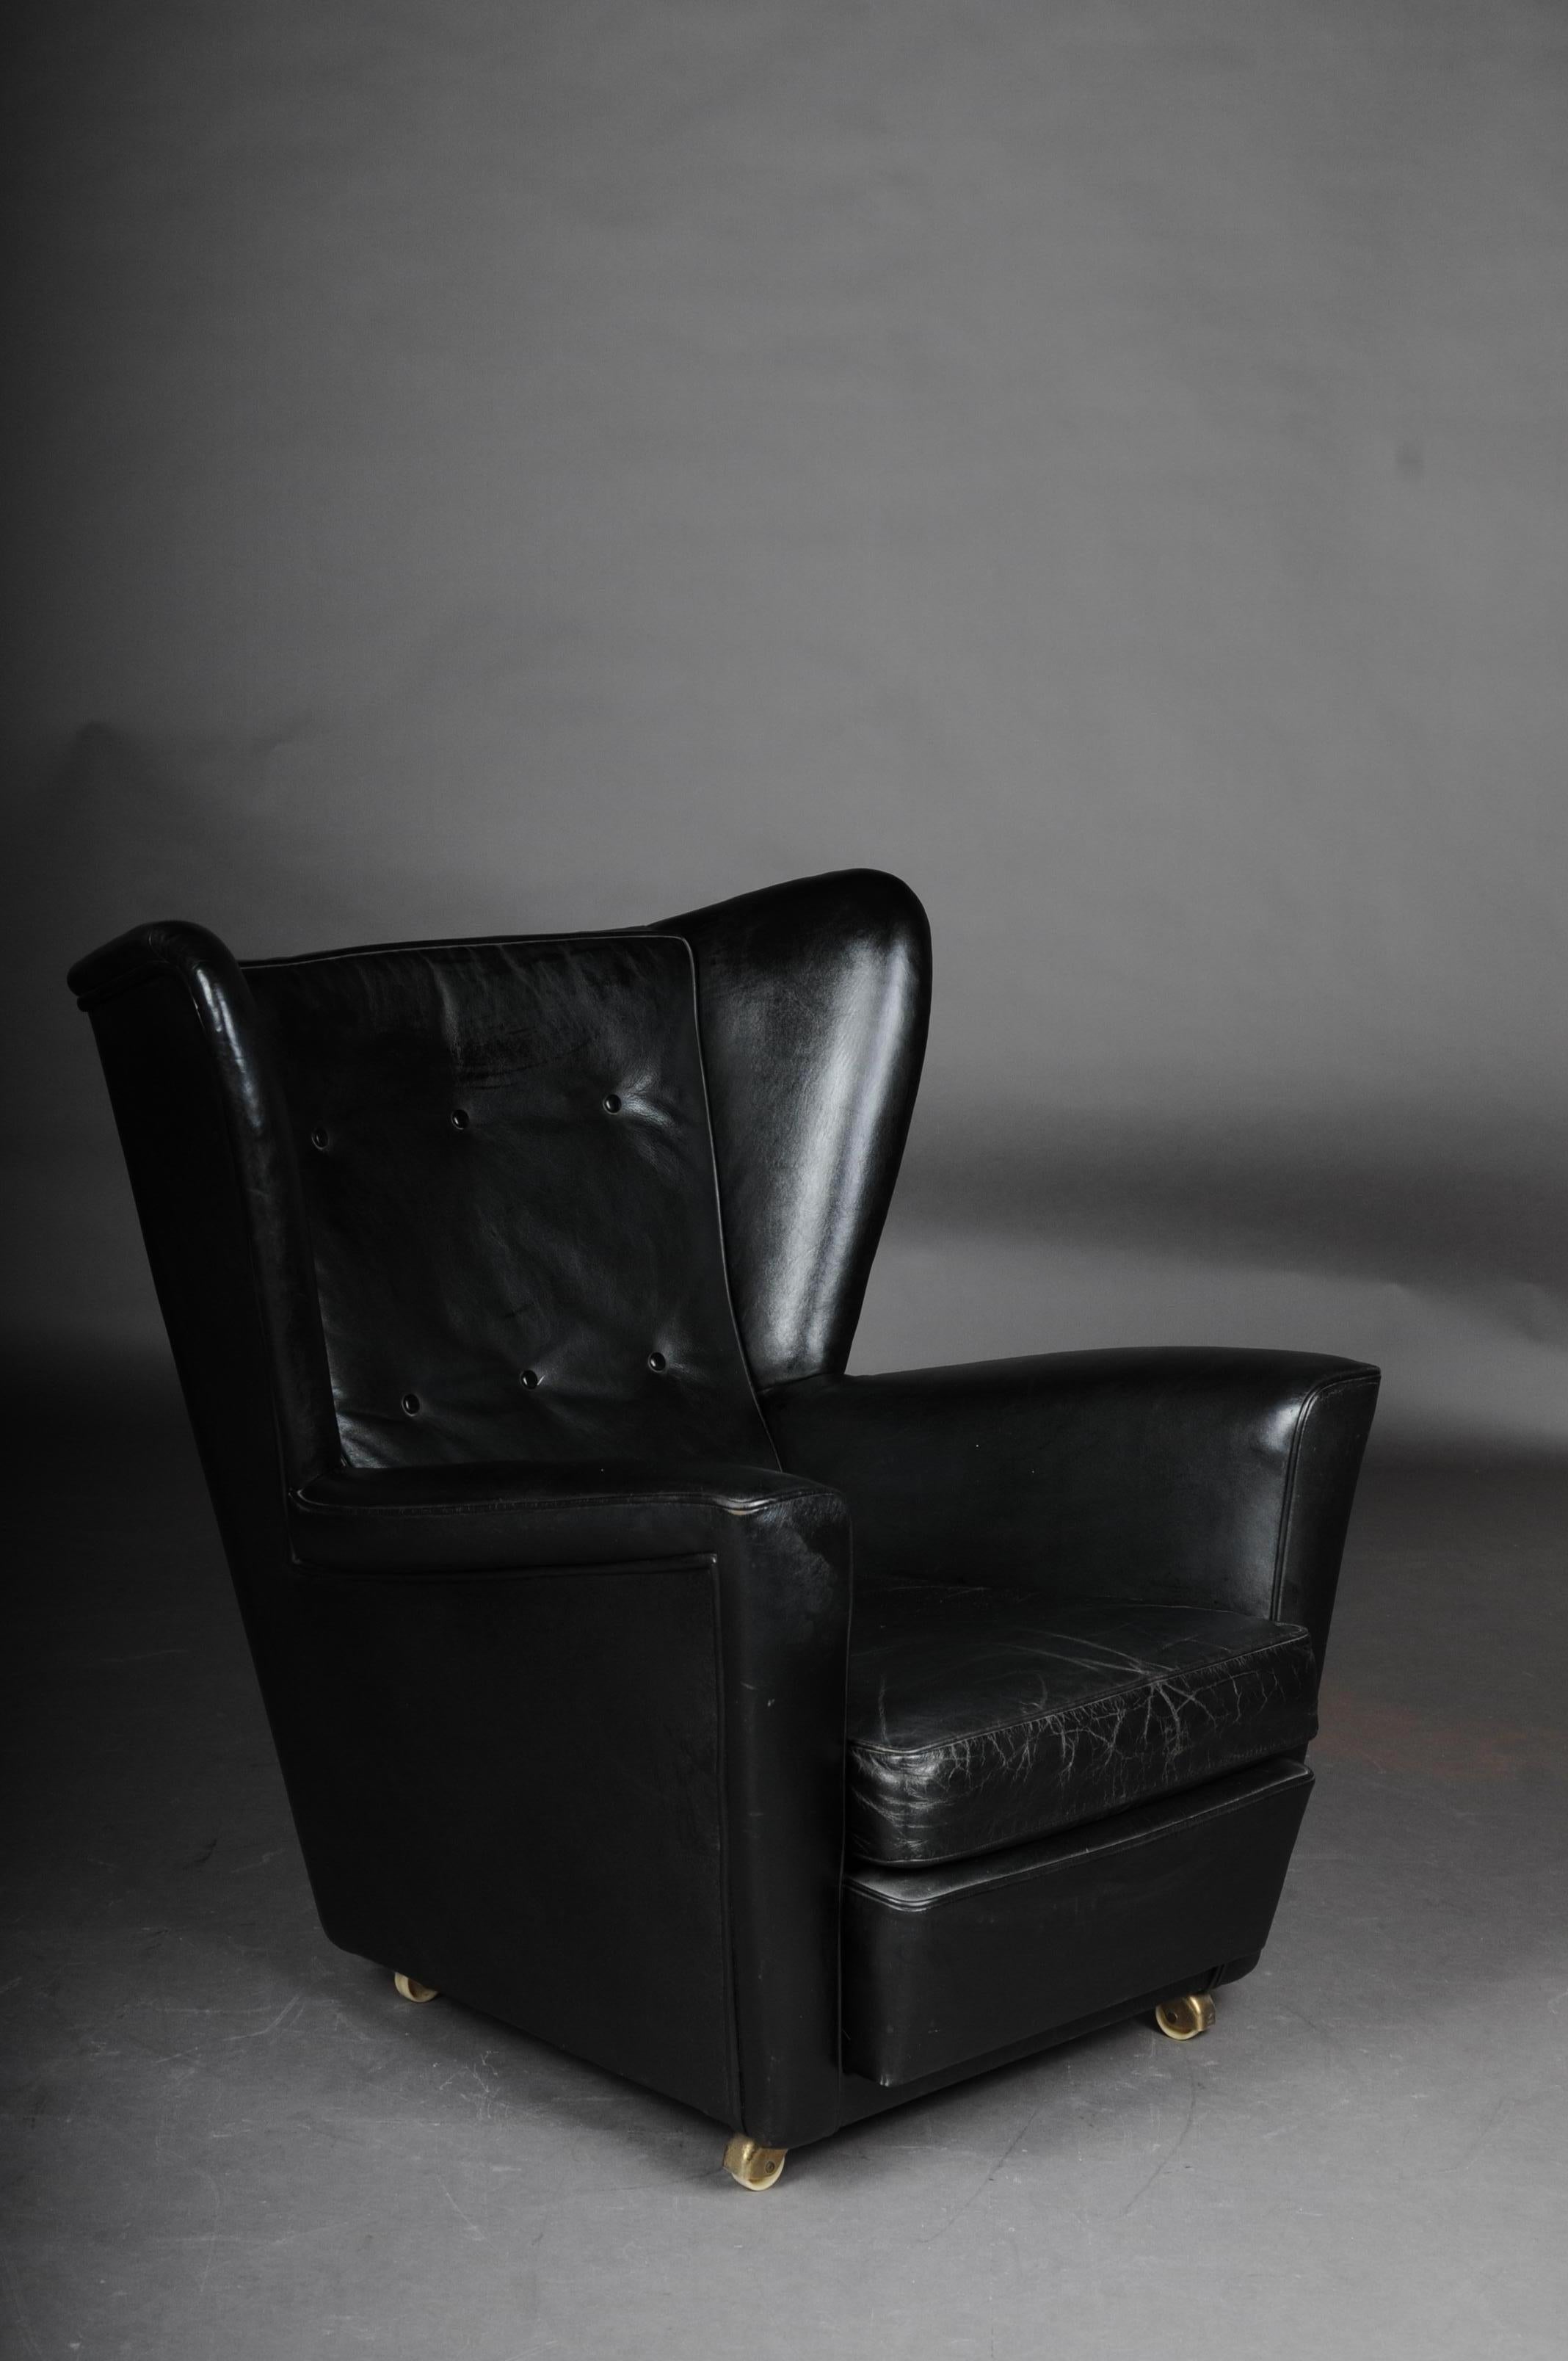 Fauteuil club vintage, tapissé cuir 1960-1970s

Étiqueté de Londres. Chaise rembourrée entièrement recouverte de cuir, vintage années 1960-1970. La chaise rembourrée, qui convainc par son élégance simple, attire le regard dans tous les intérieurs.